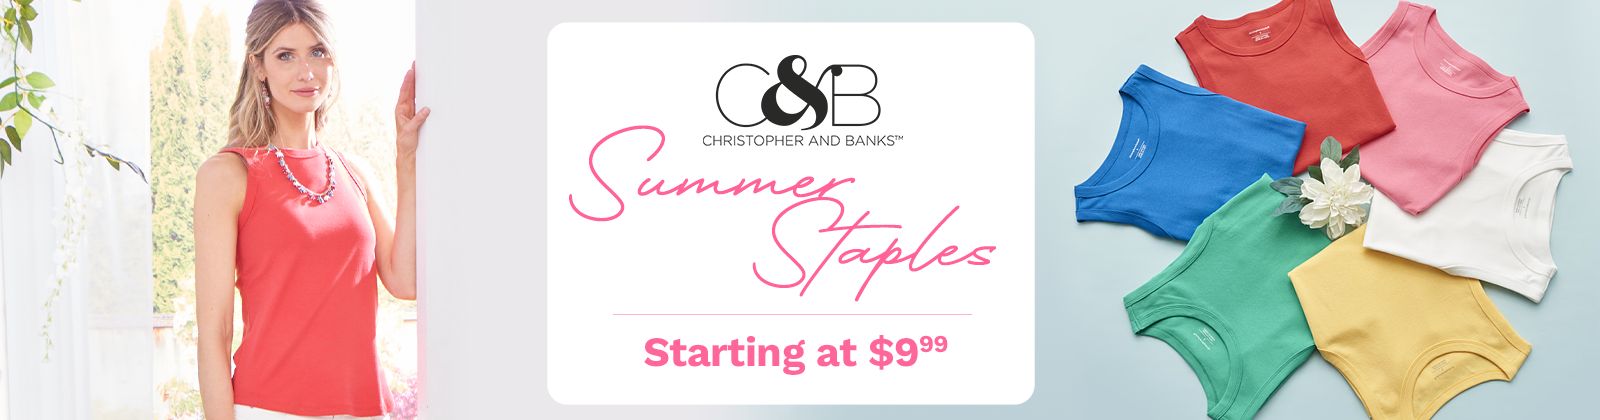 Christopher & Banks  Summer Staples Starting at $9.99: 772-924 & 772-364